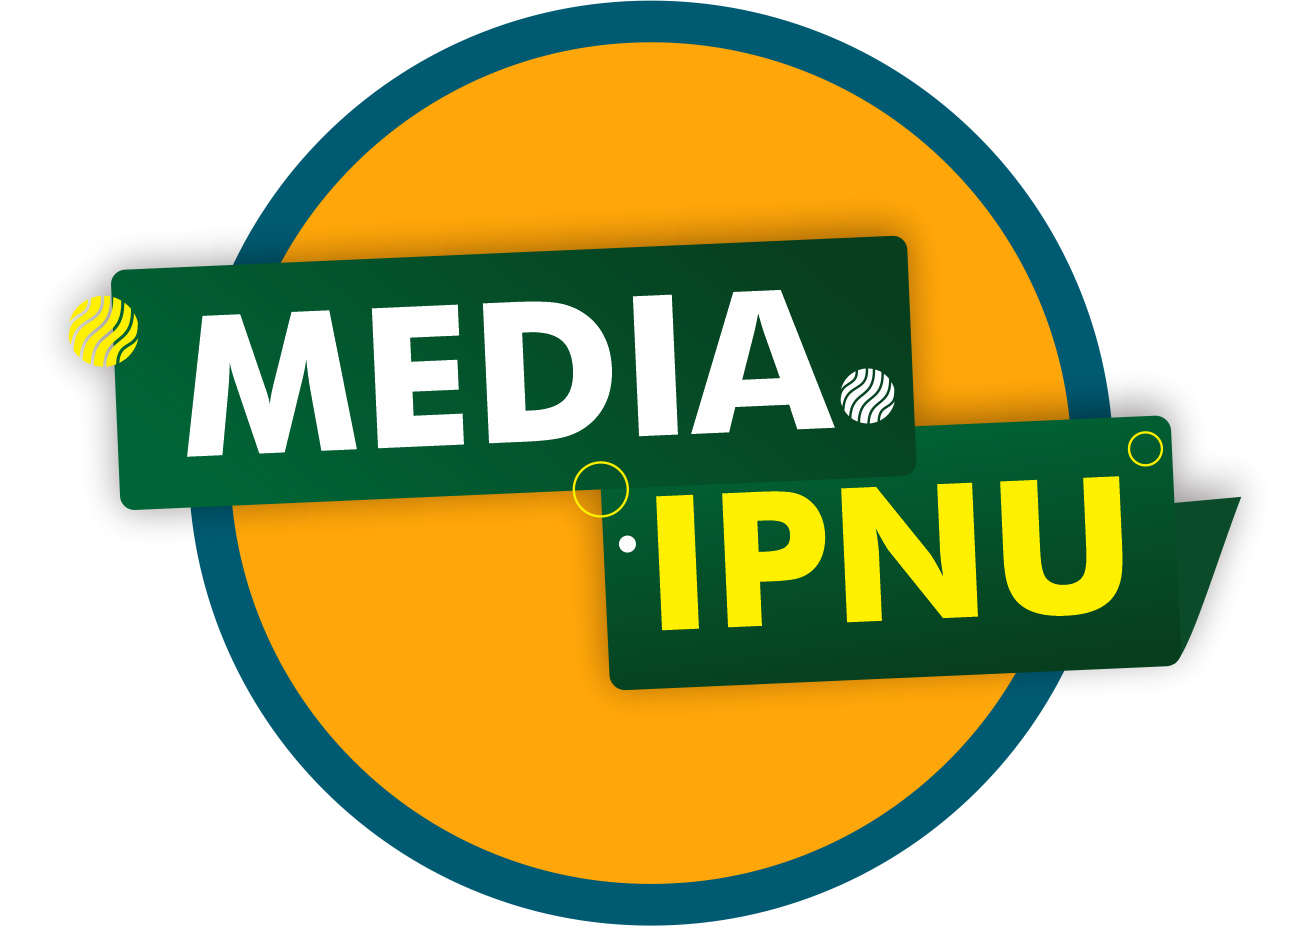 MEDIA IPNU